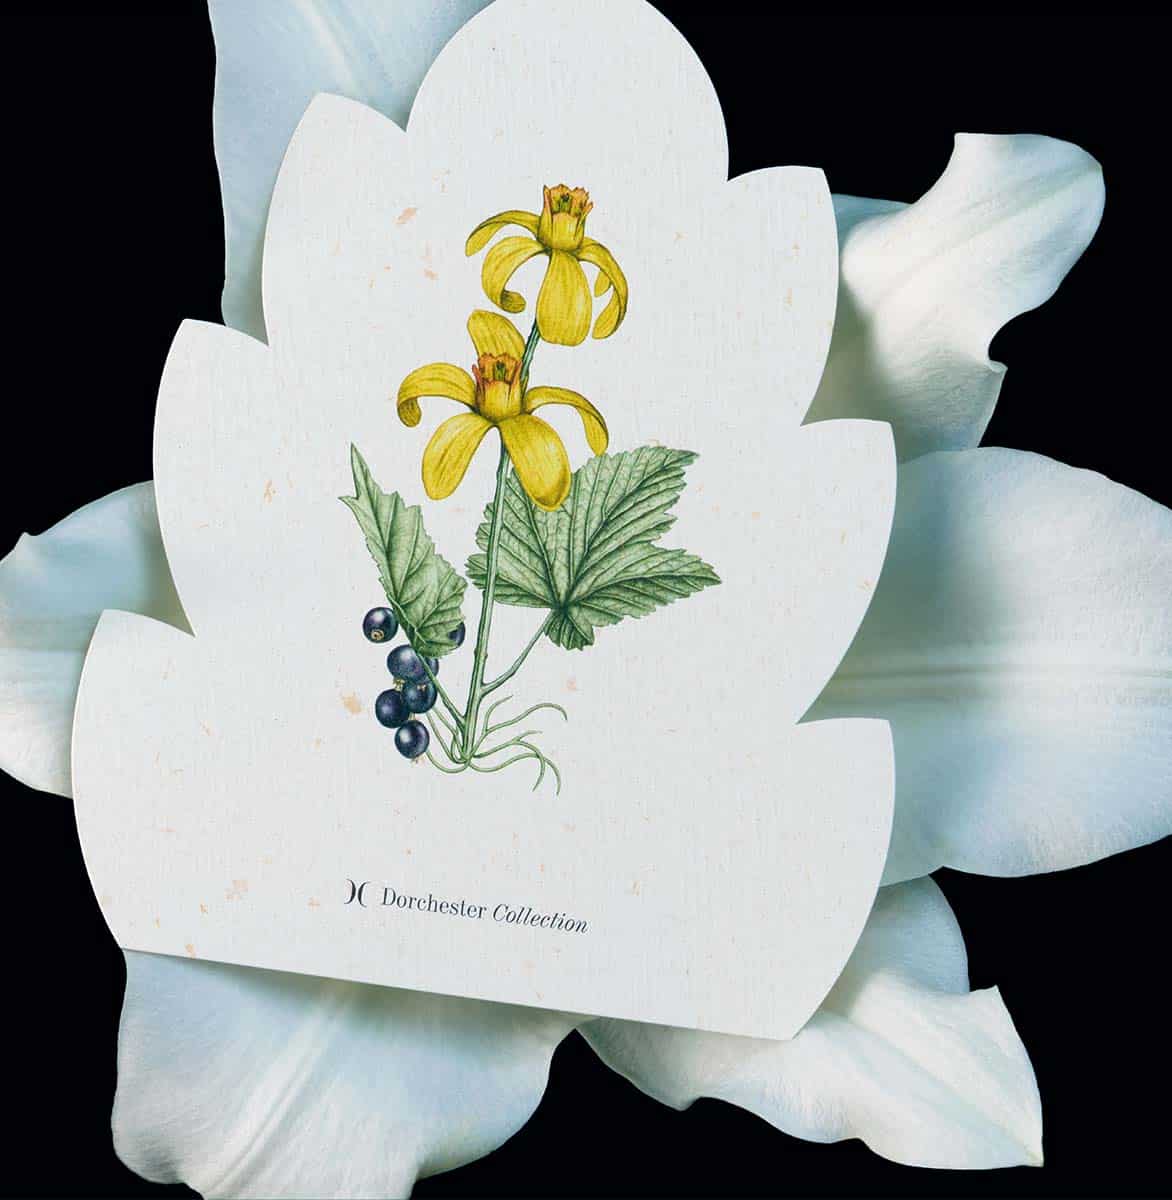 Eine gelbe Blütenillustration auf hellem Papier liegt auf einer weißen Lilie